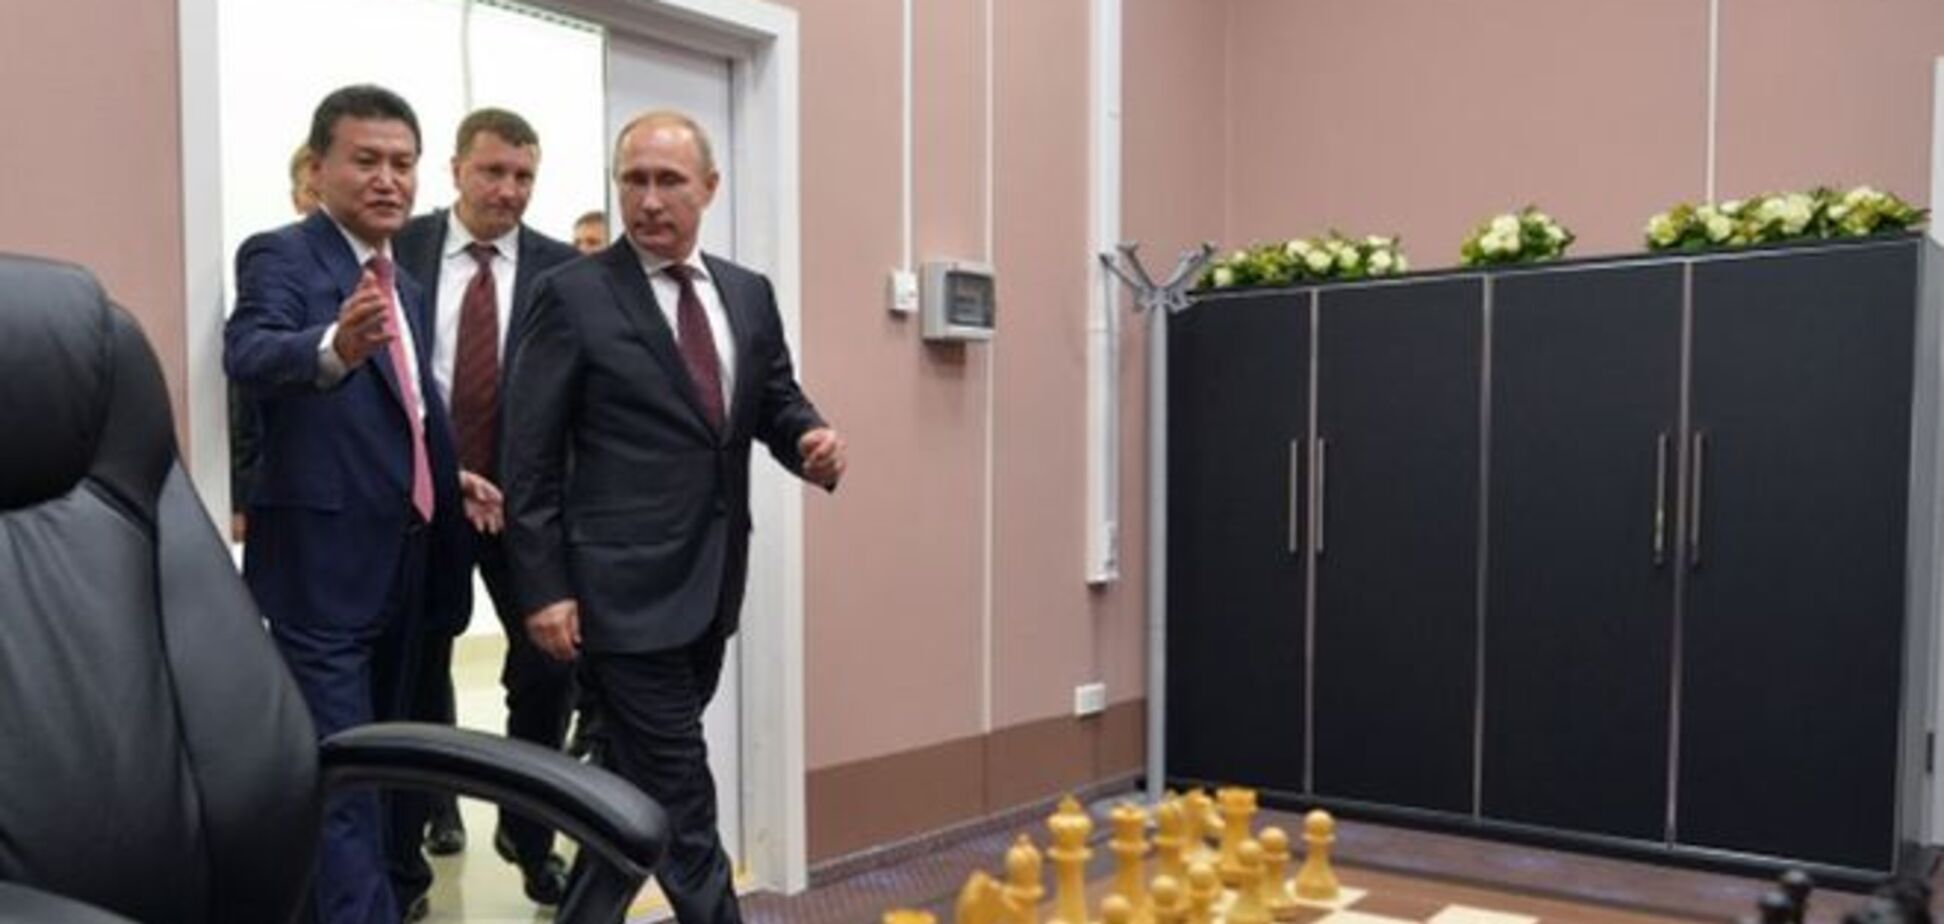 Гаррі Каспаров: шахи для Путіна - це спецоперація. Українська влада повинна це усвідомити